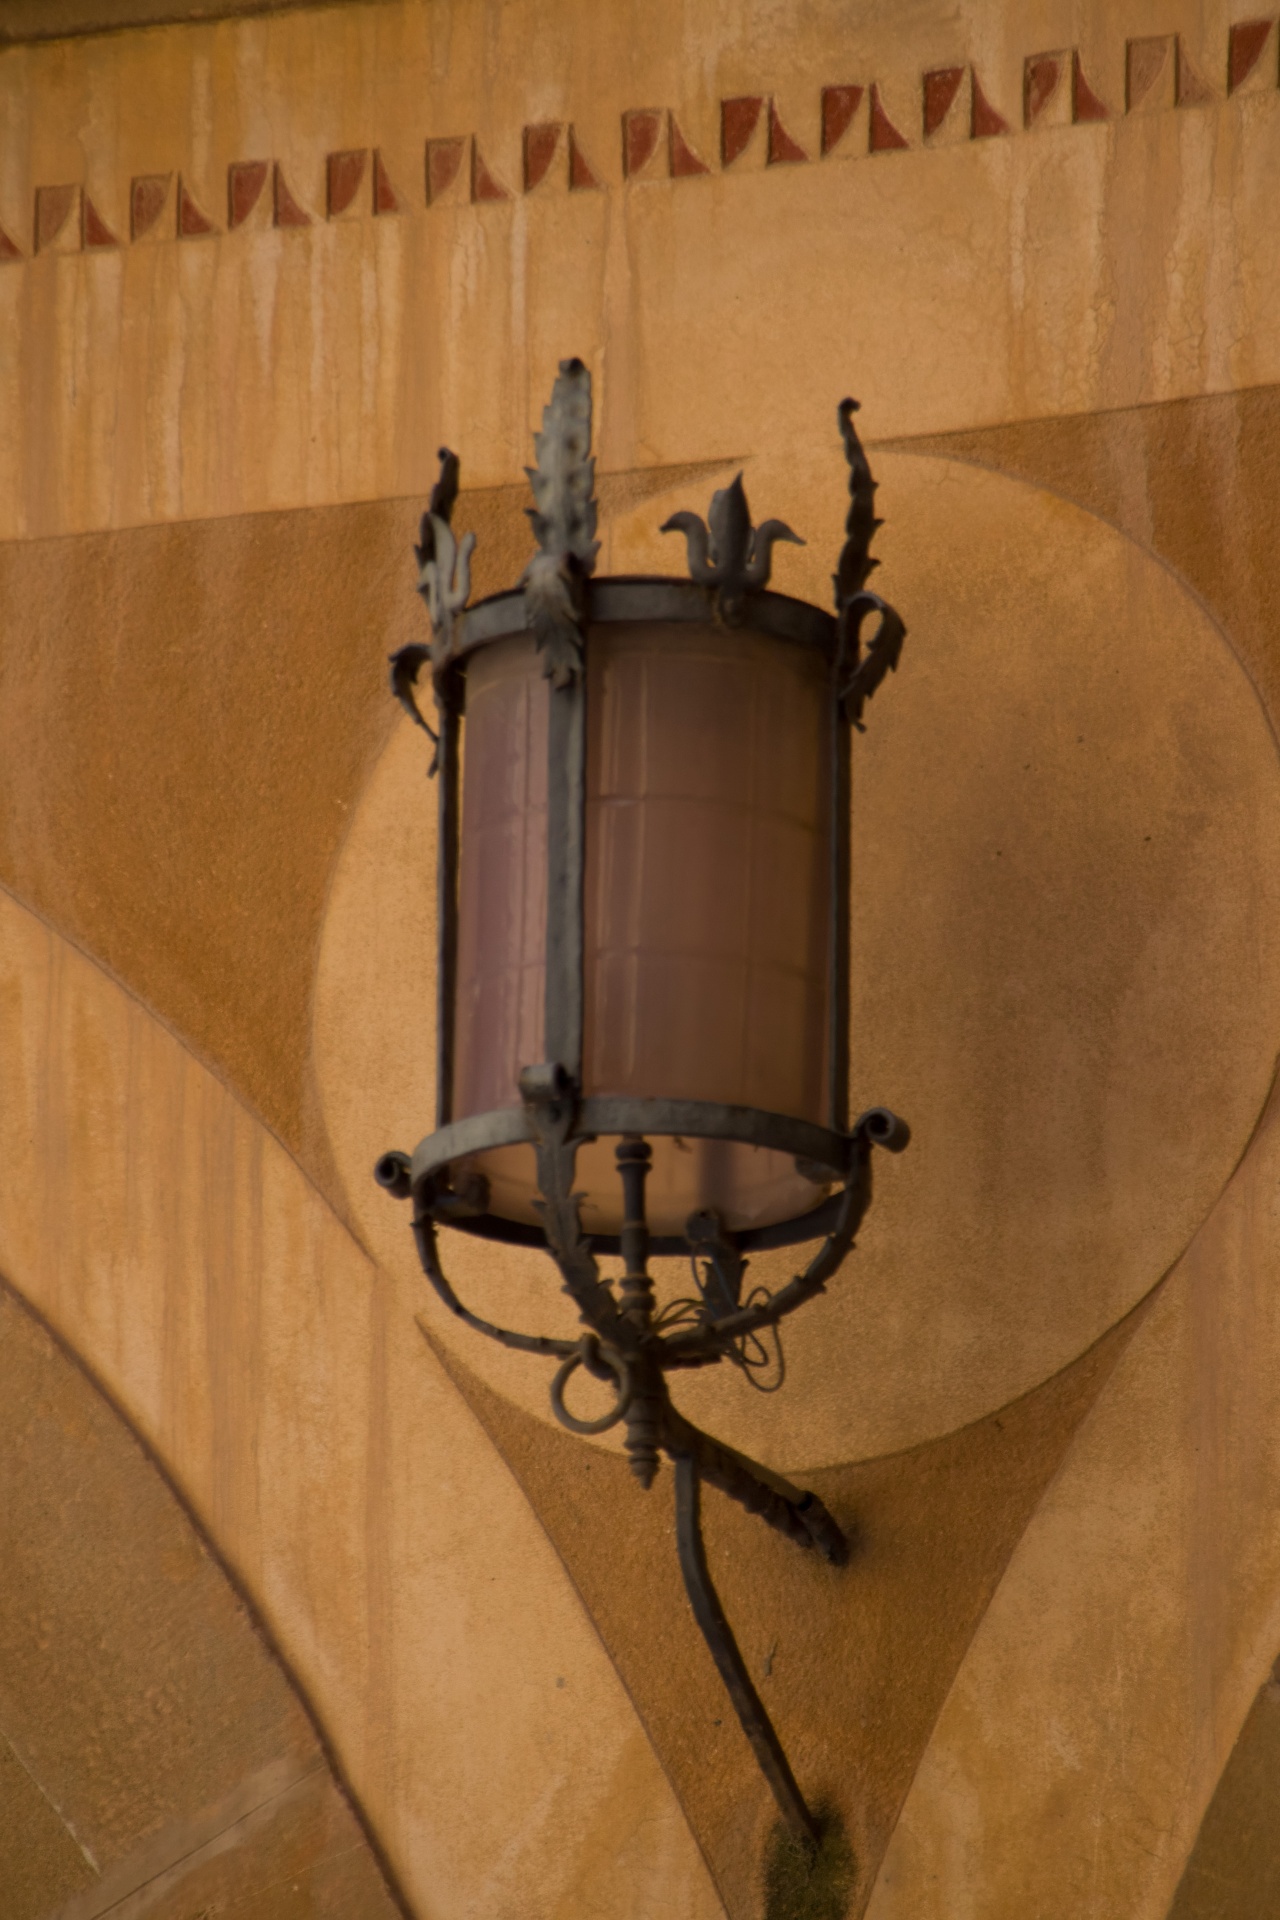 A fancy cast-iron street lantern.